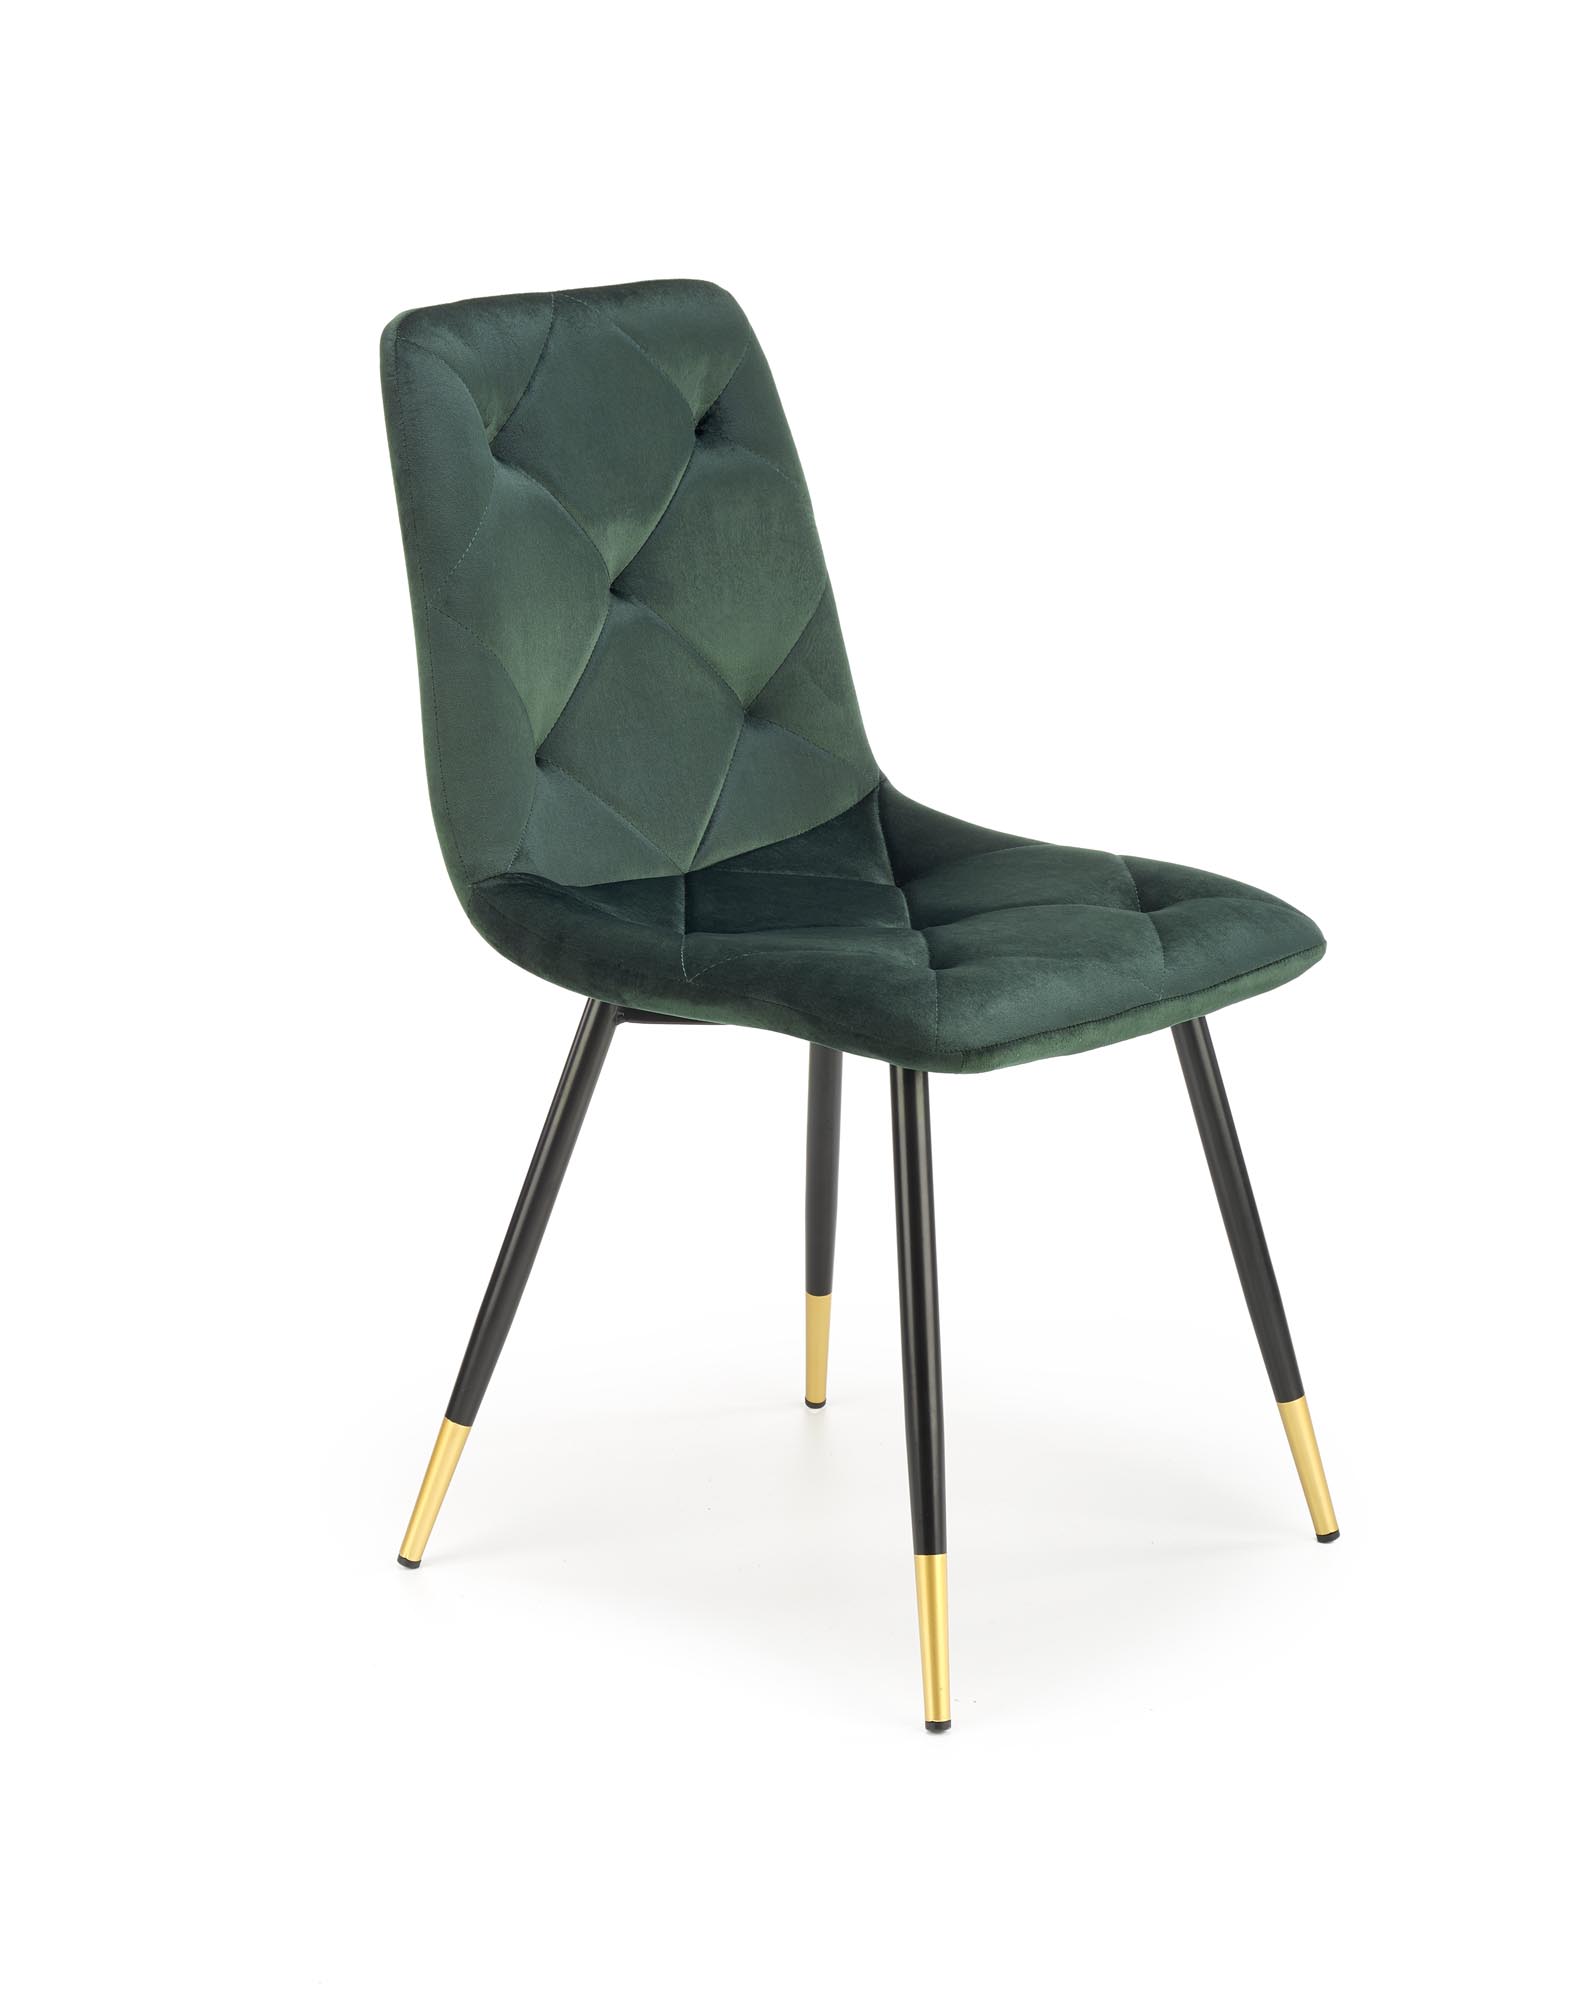 Moderní Židle čalouněná K438 - tmavý Zelený k438 Židle Tmavý Zelený